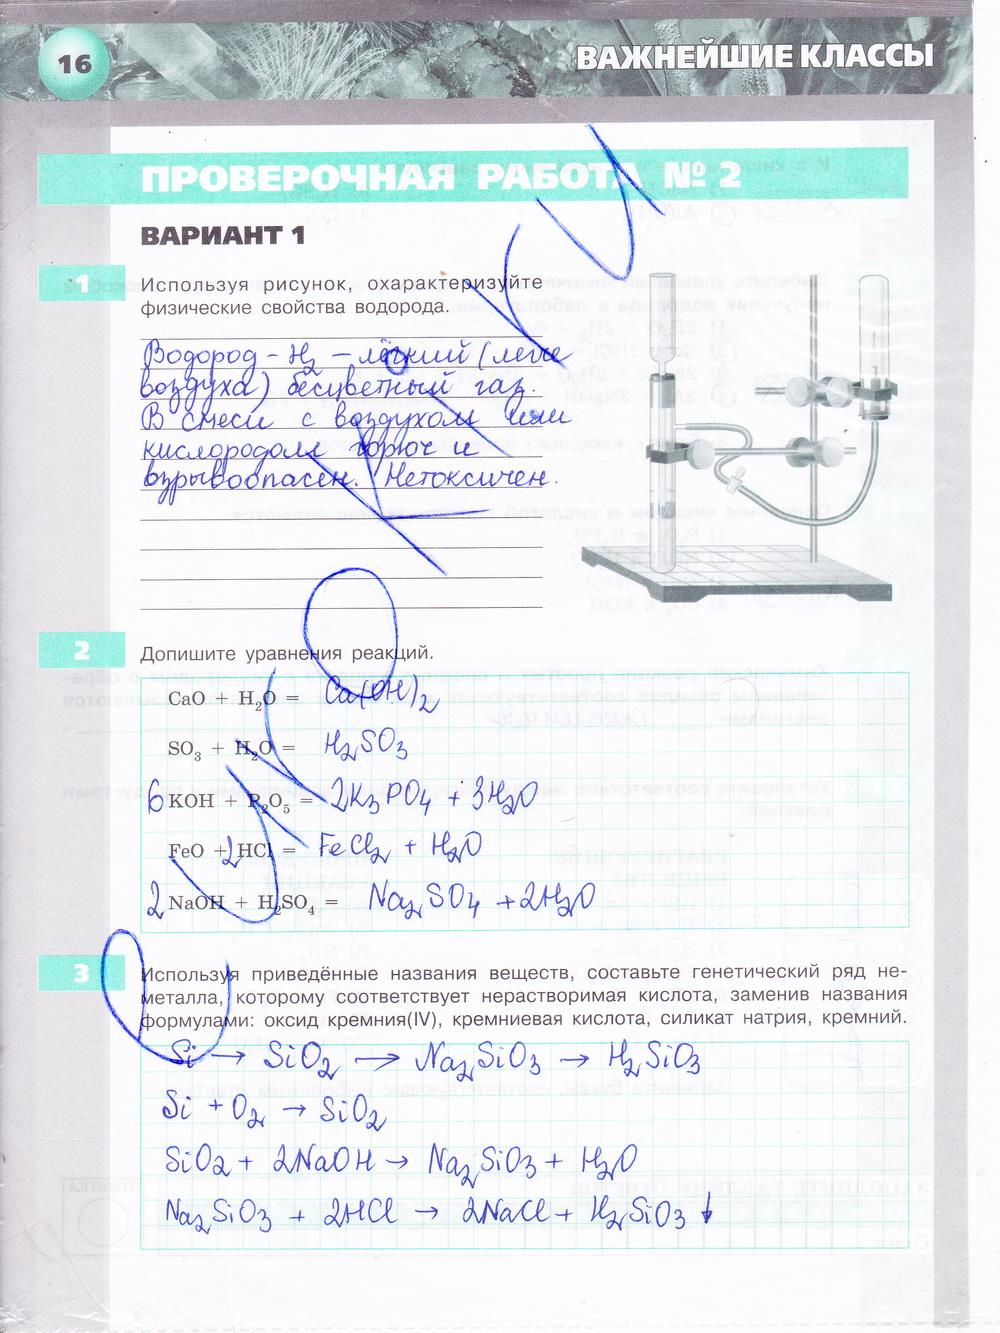 гдз 8 класс тетрадь-экзаменатор страница 16 химия Бобылева, Бирюлина